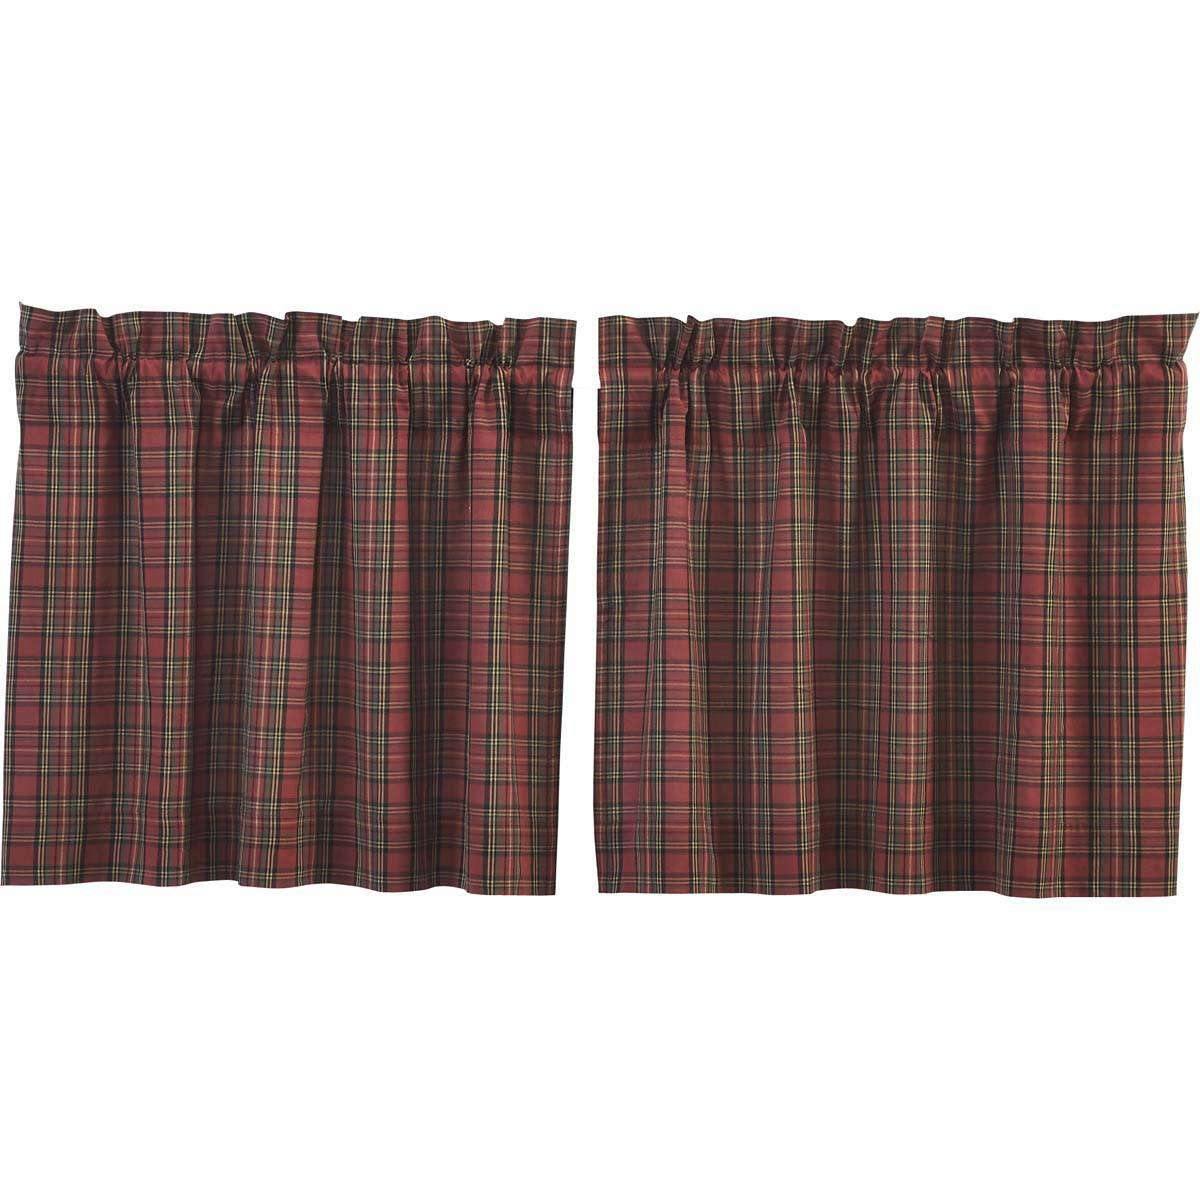 Tartan Red Plaid Tier Curtain Set of 2 L24xW36 - The Fox Decor